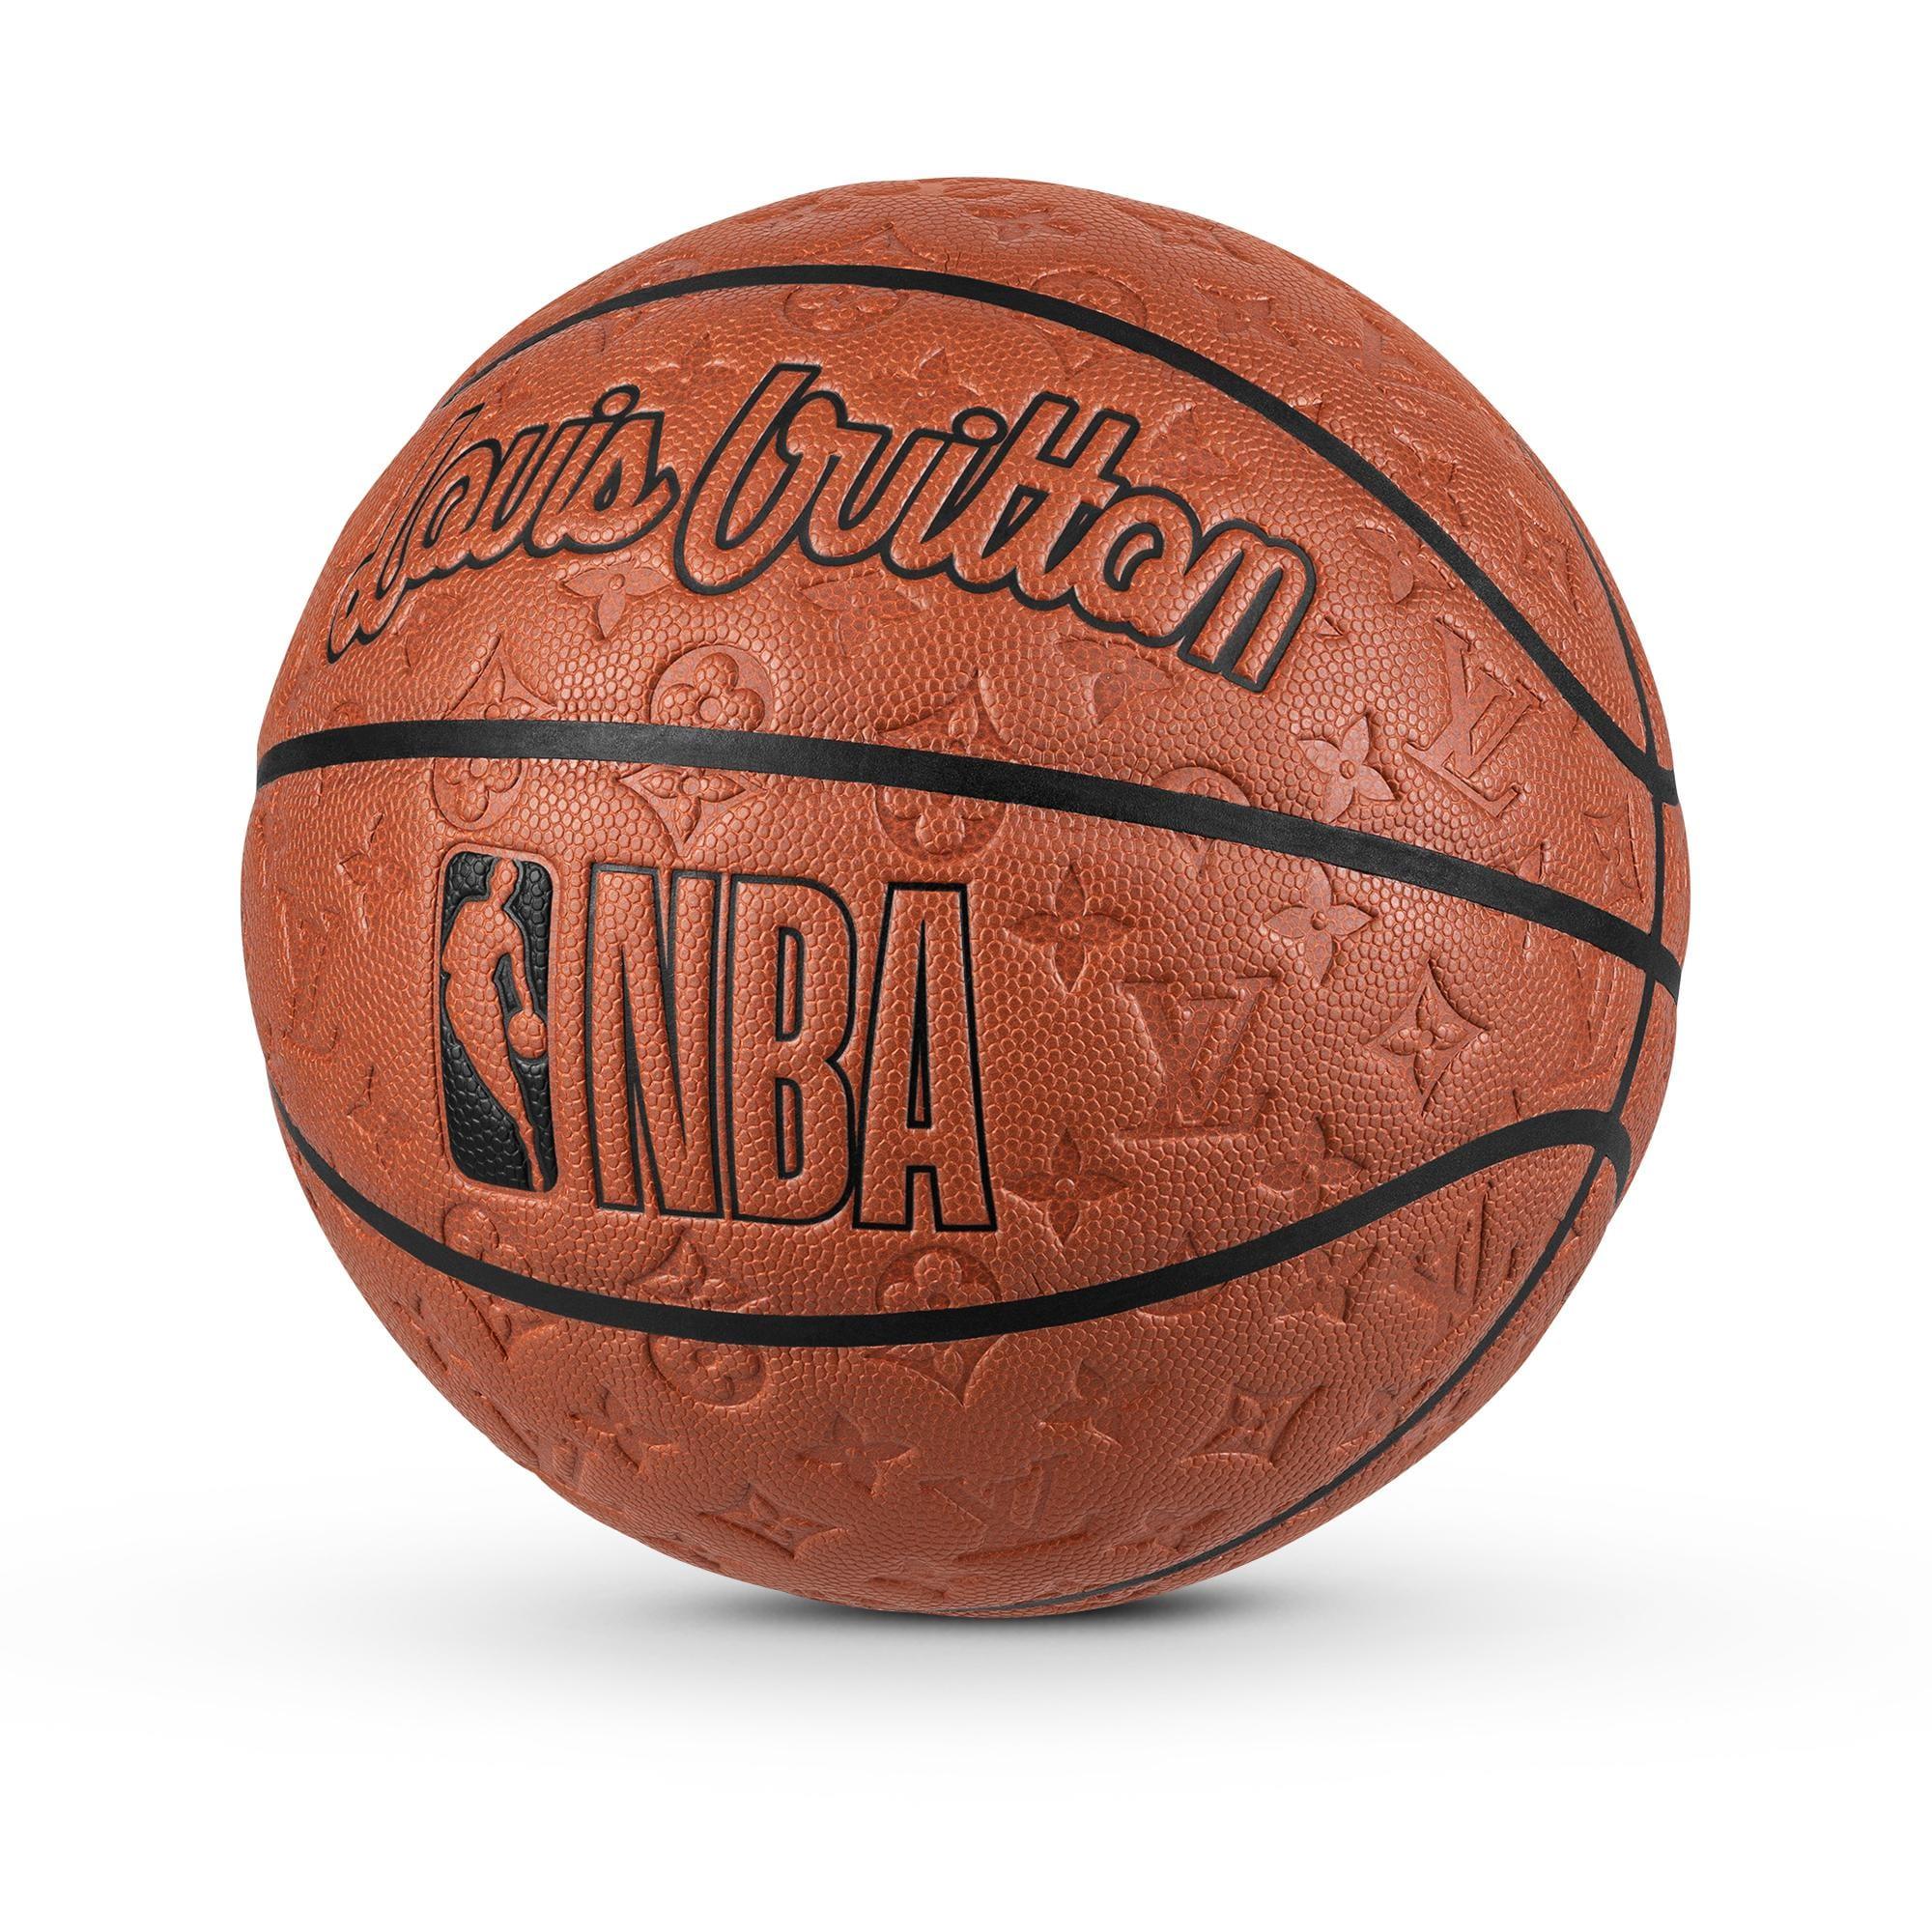 Louis Vuitton Nba Basketball - 8 For Sale on 1stDibs